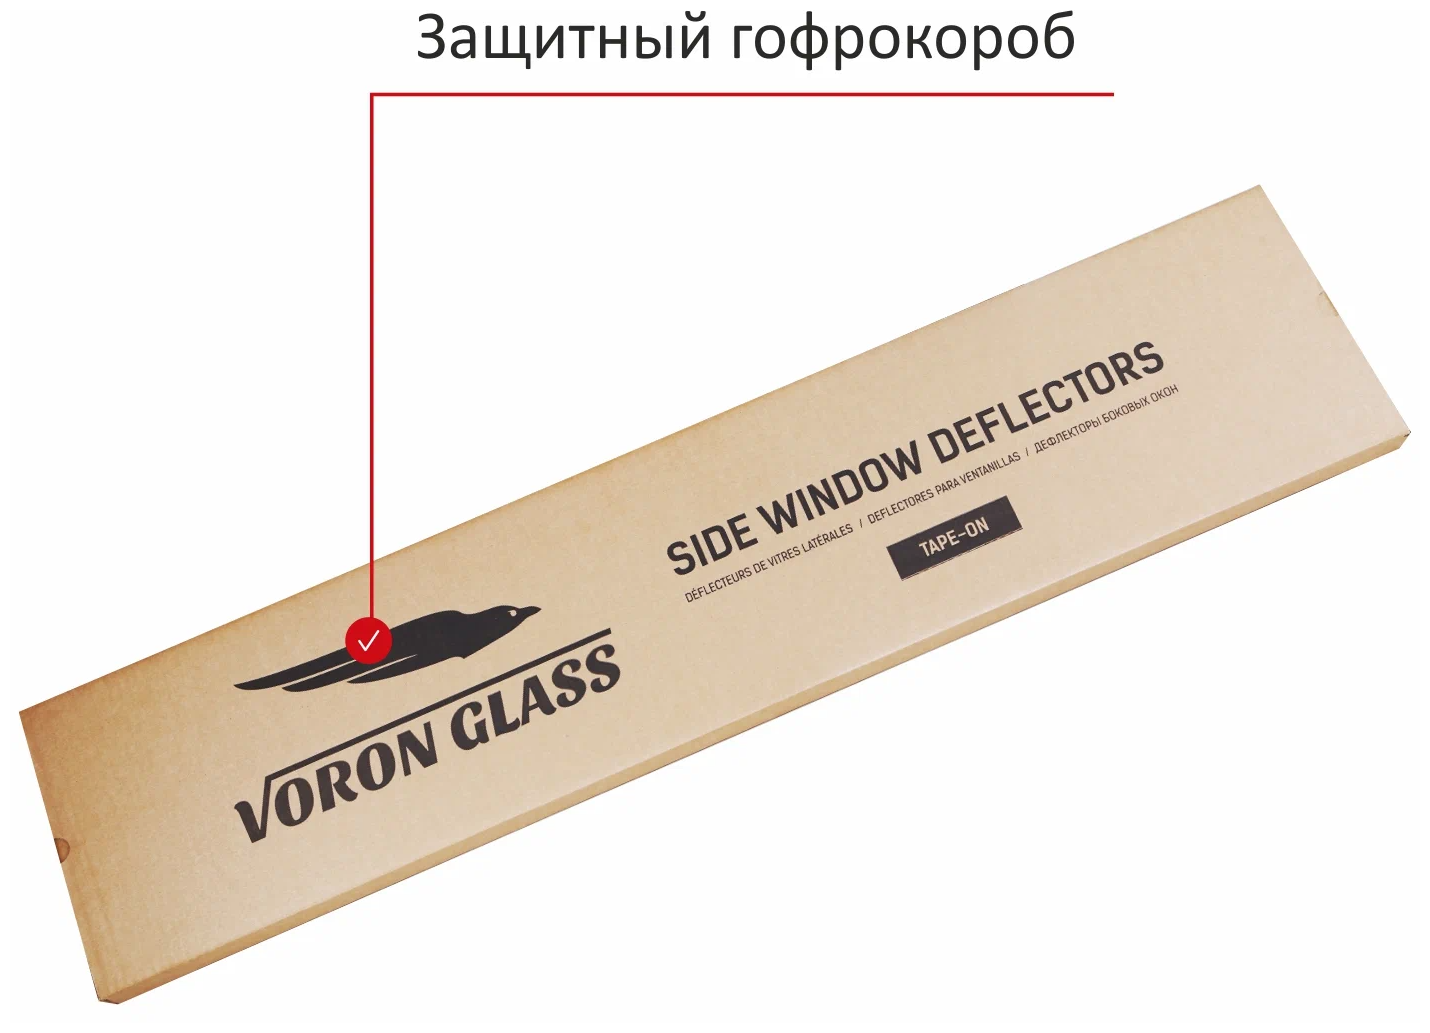 Дефлекторы окон неломающиеся Voron Glass серия Samurai для LADA VESTA SW Cross